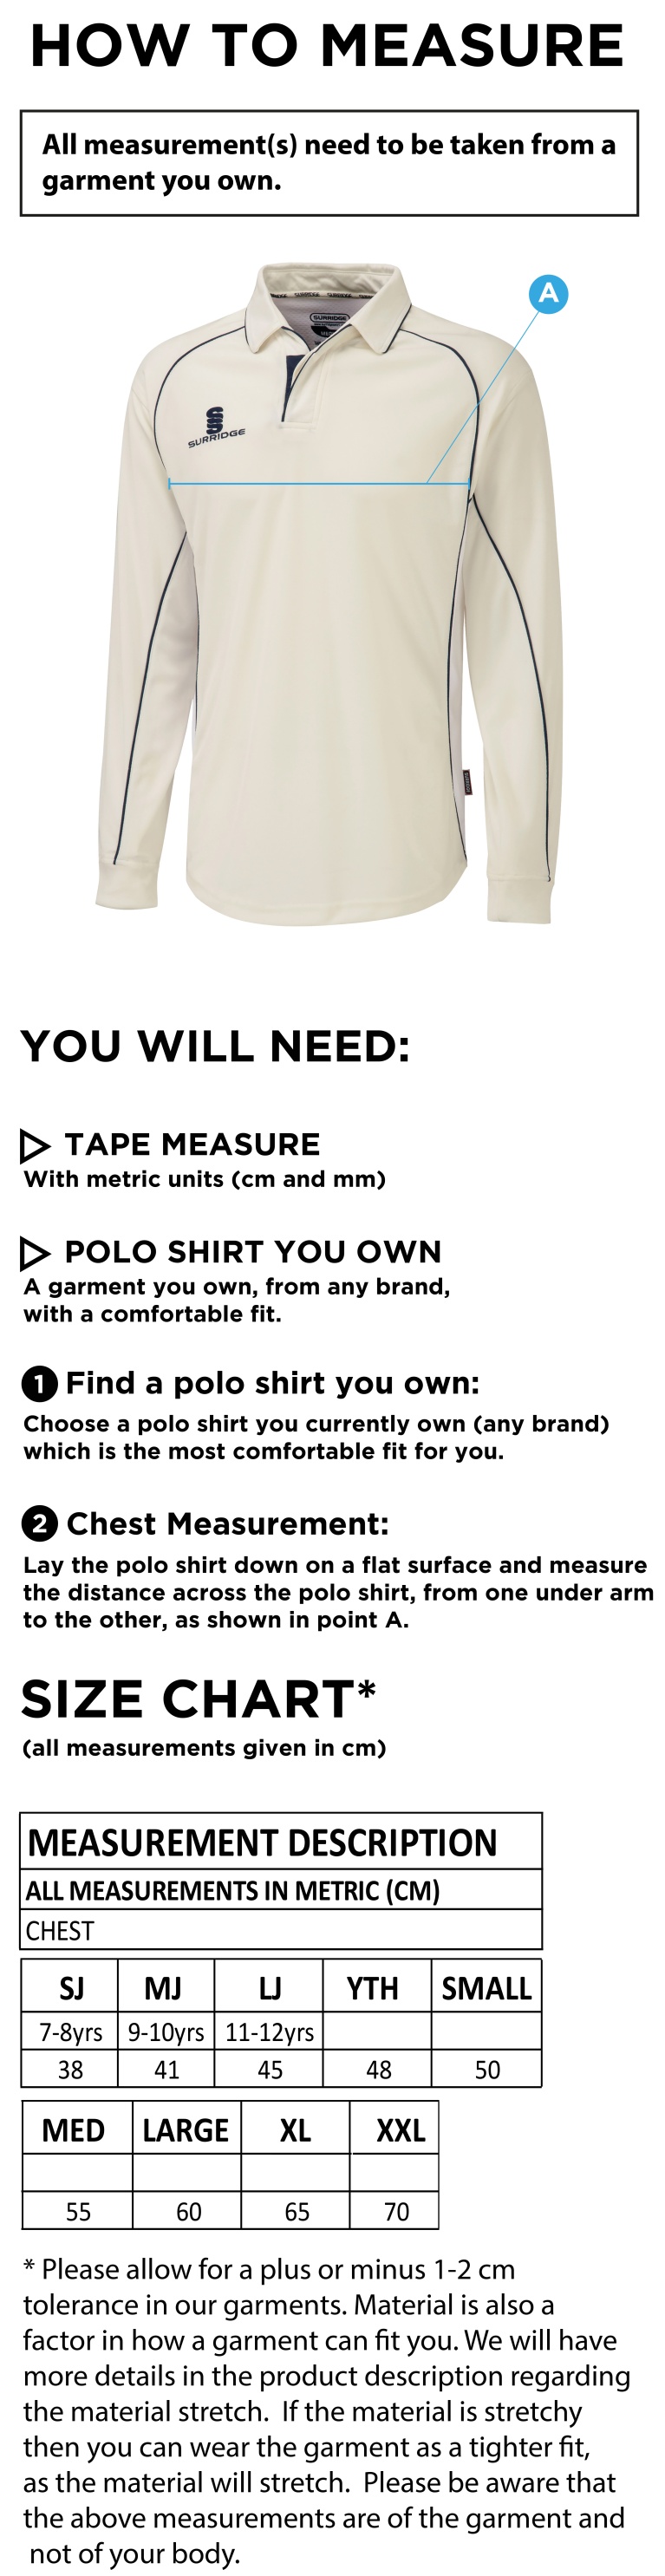 Hinckley Amateurs CC - Premier Long Sleeve Shirt - Size Guide